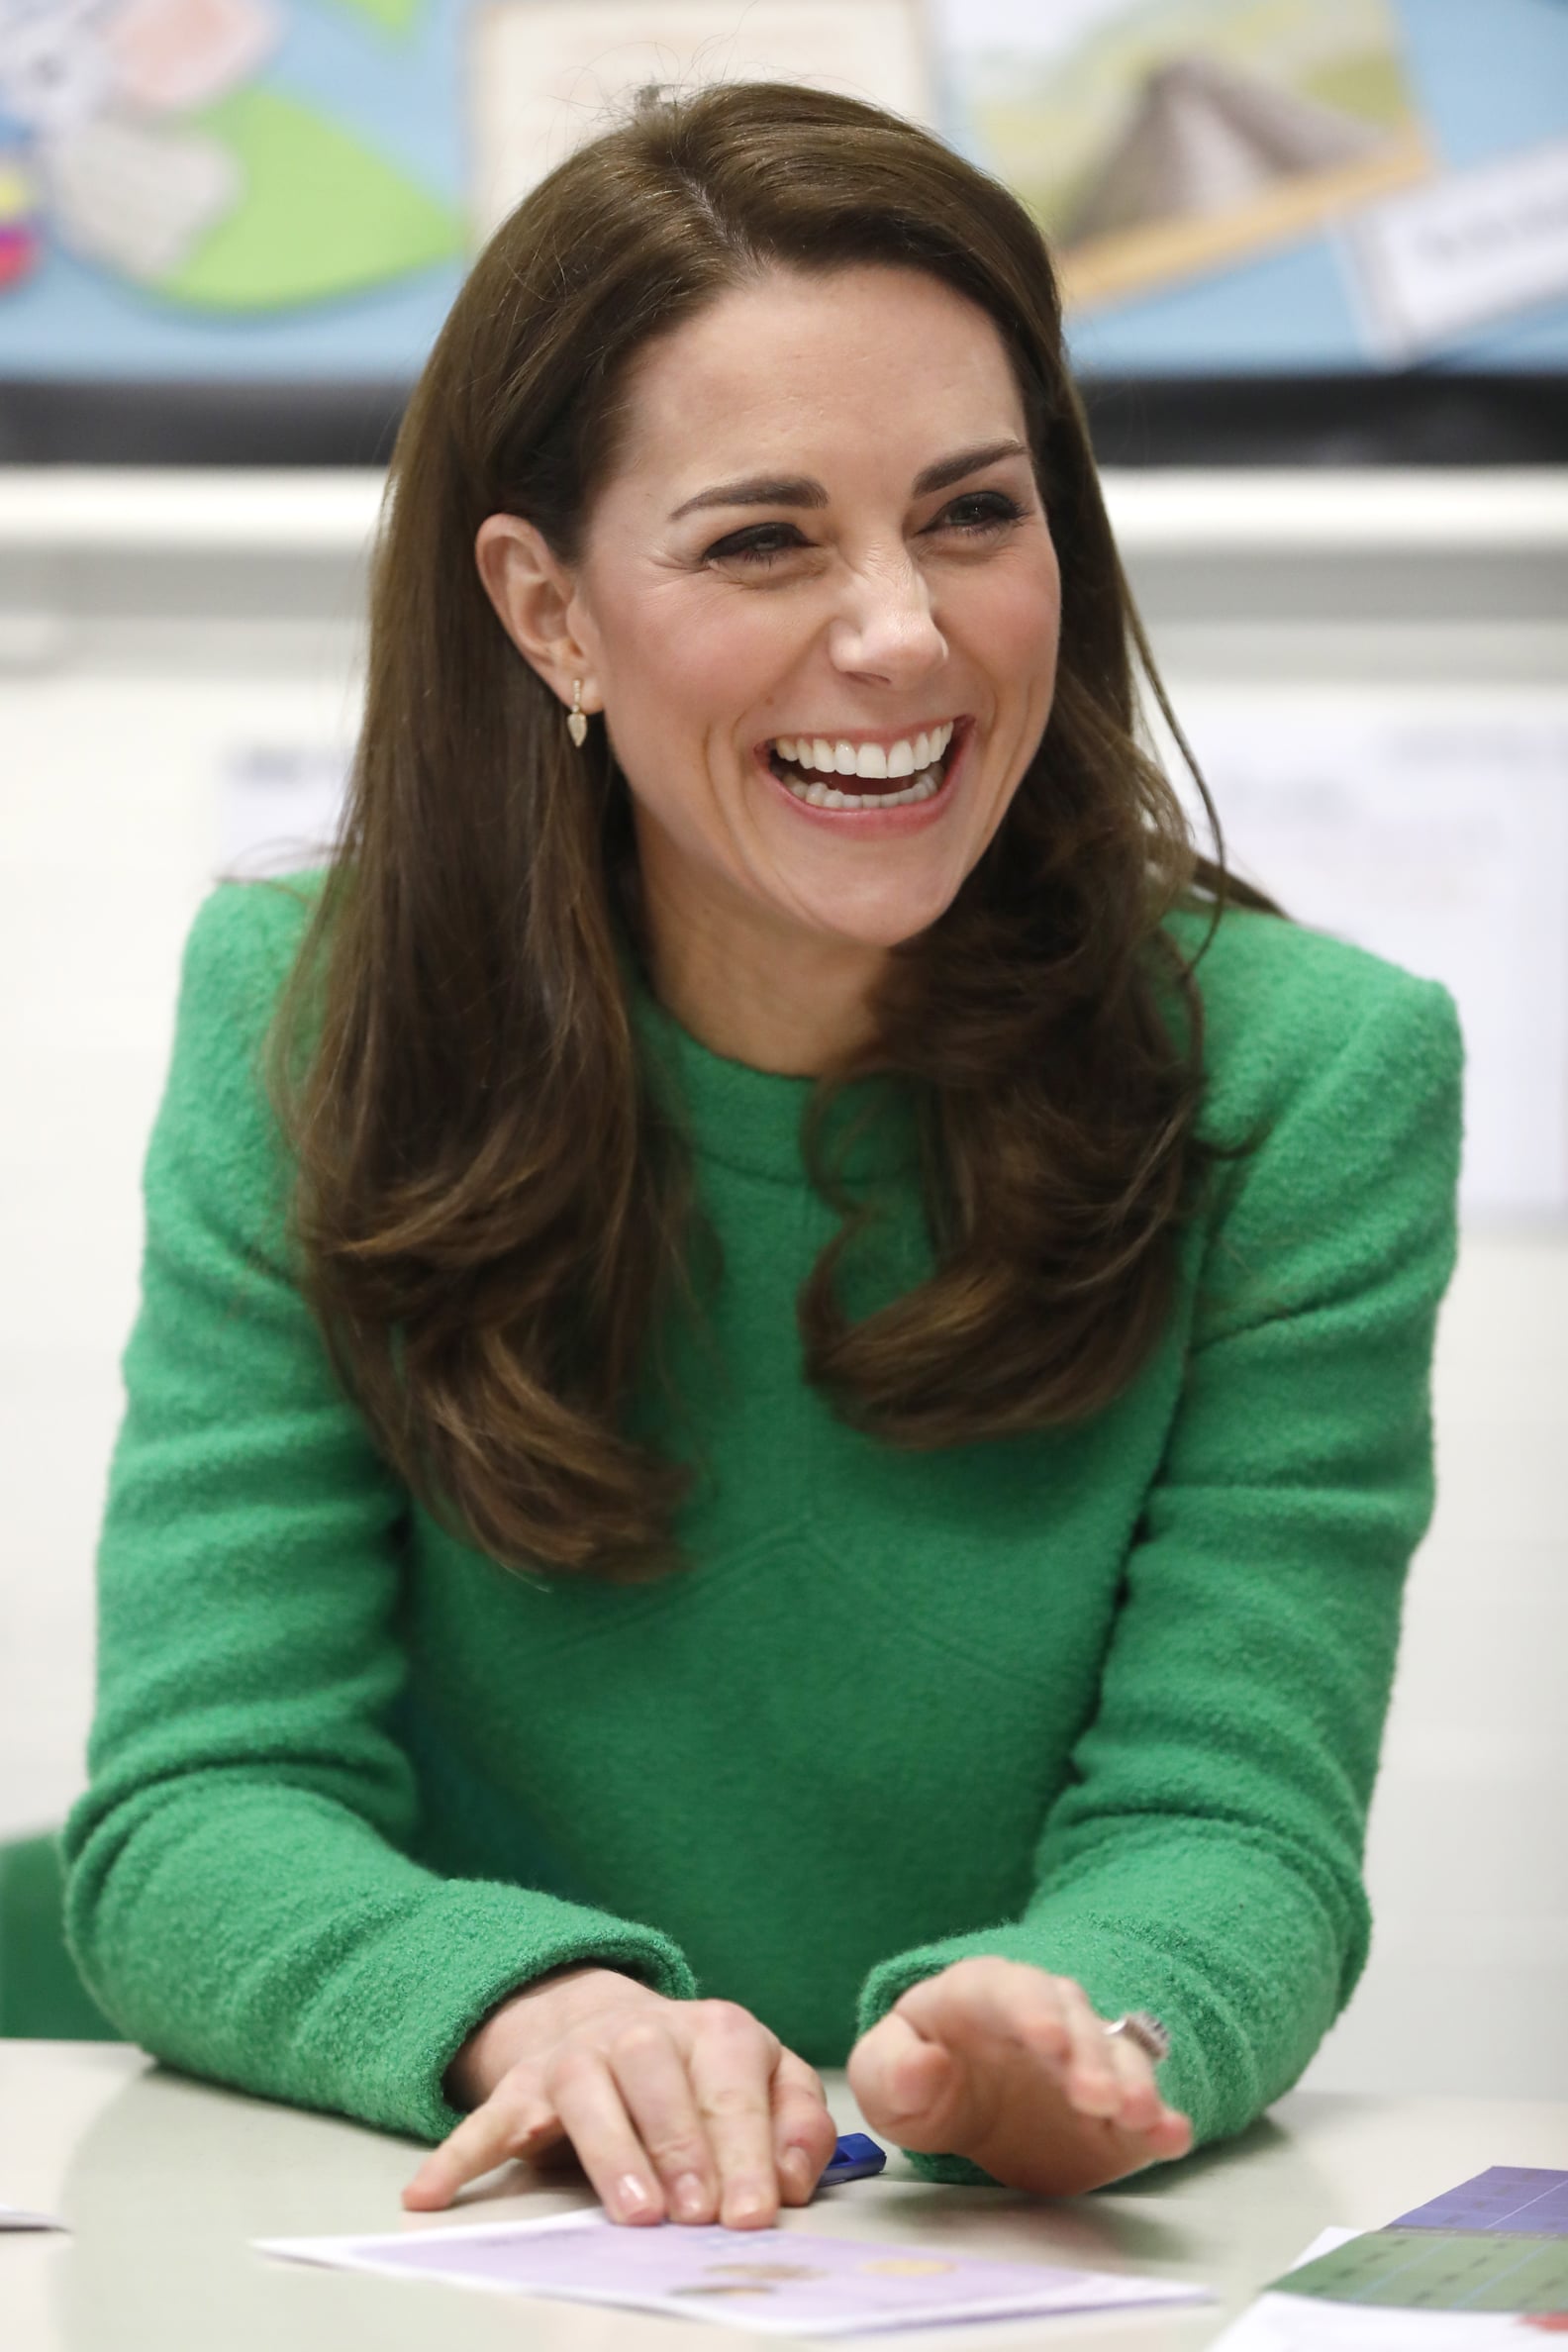 Kate Middleton Visits Schools February 2019 | POPSUGAR Celebrity